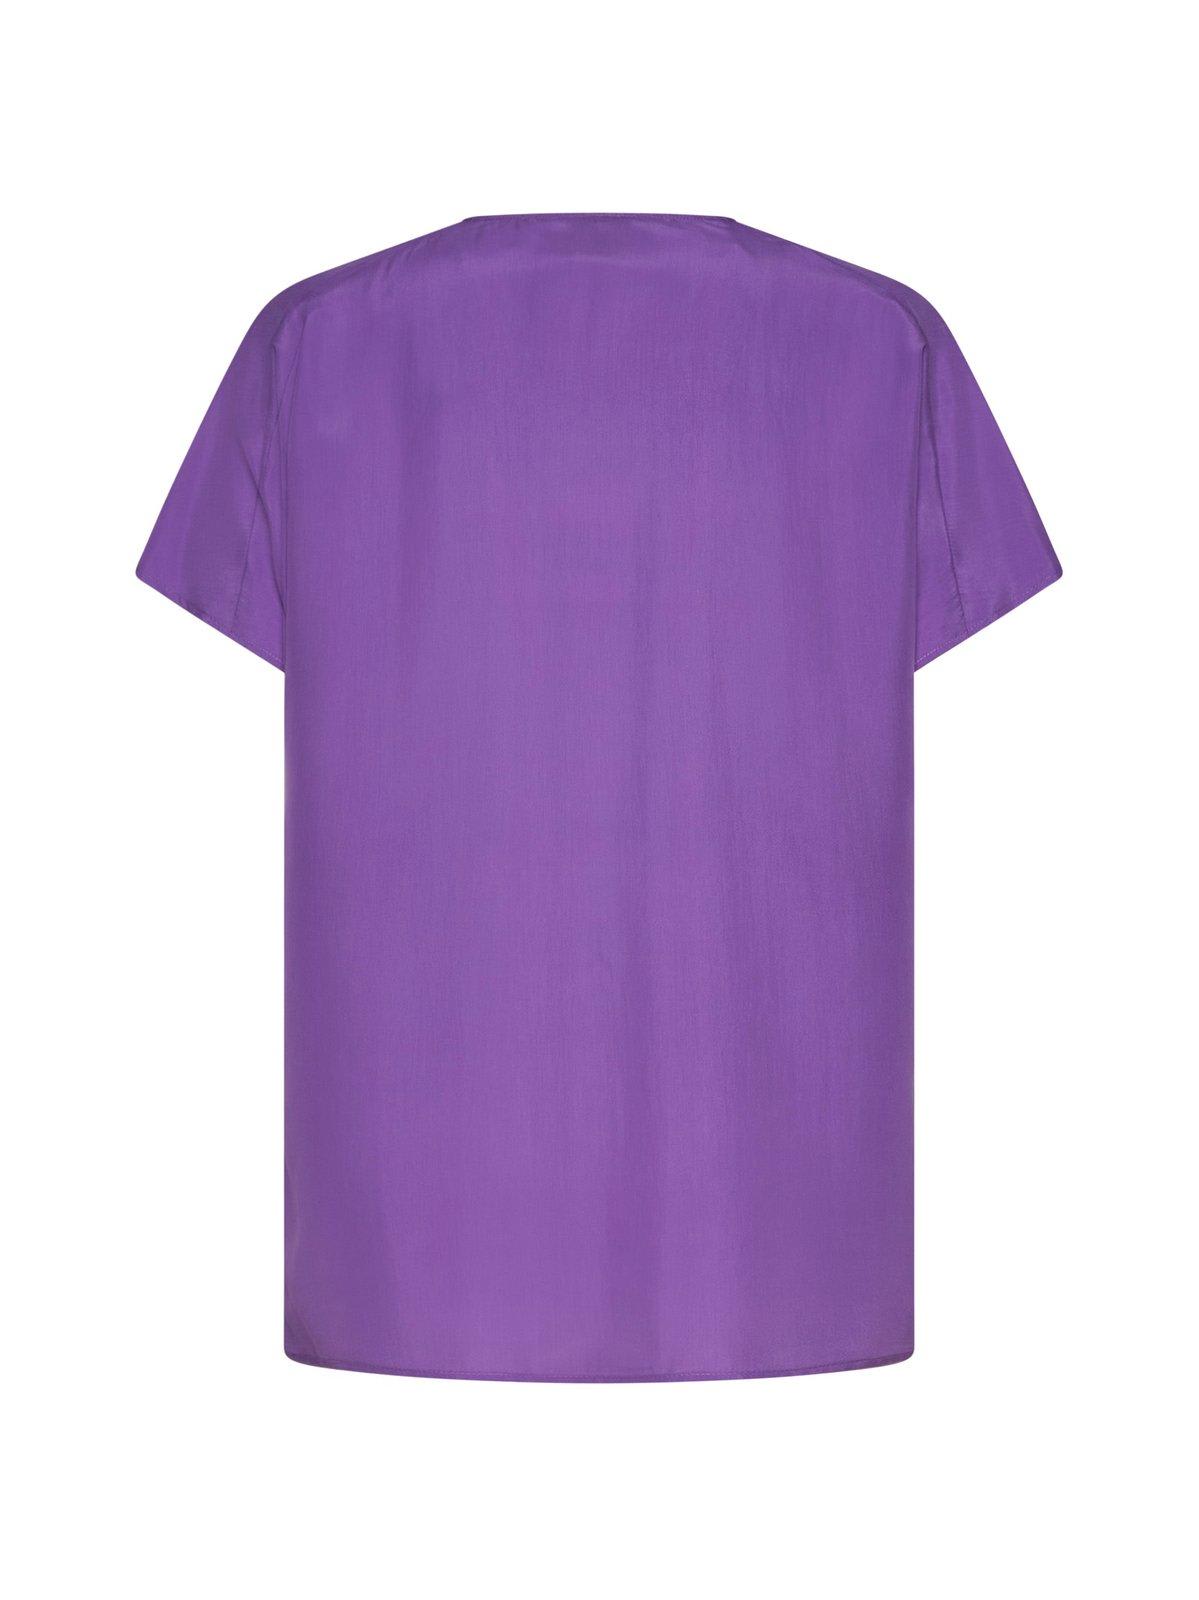 Shop Alysi V-neck Short-sleeved Top